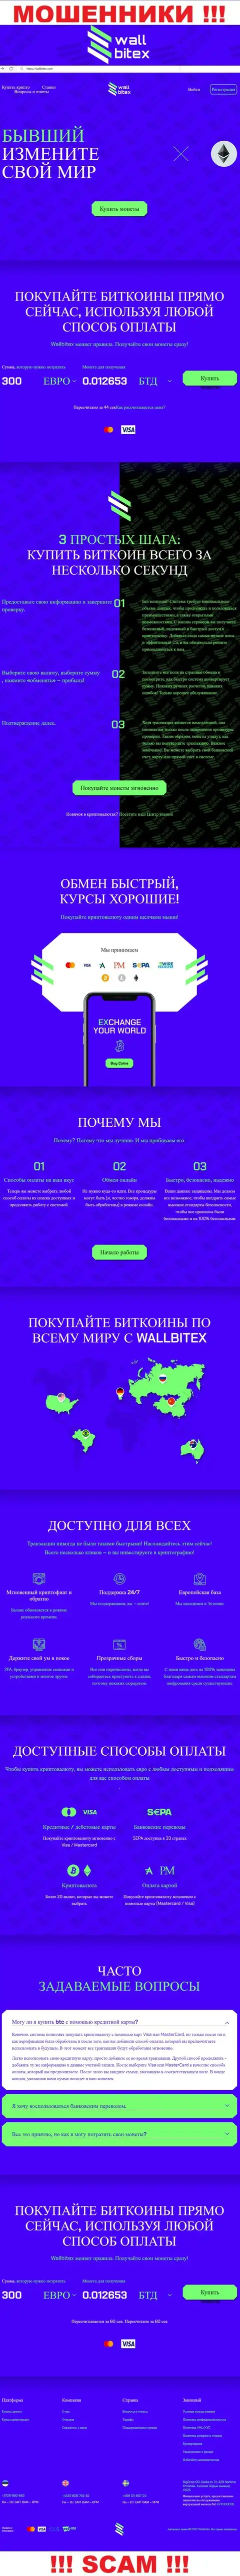 WallBitex Com - это официальный интернет-сервис жульнической компании WallBitex Com